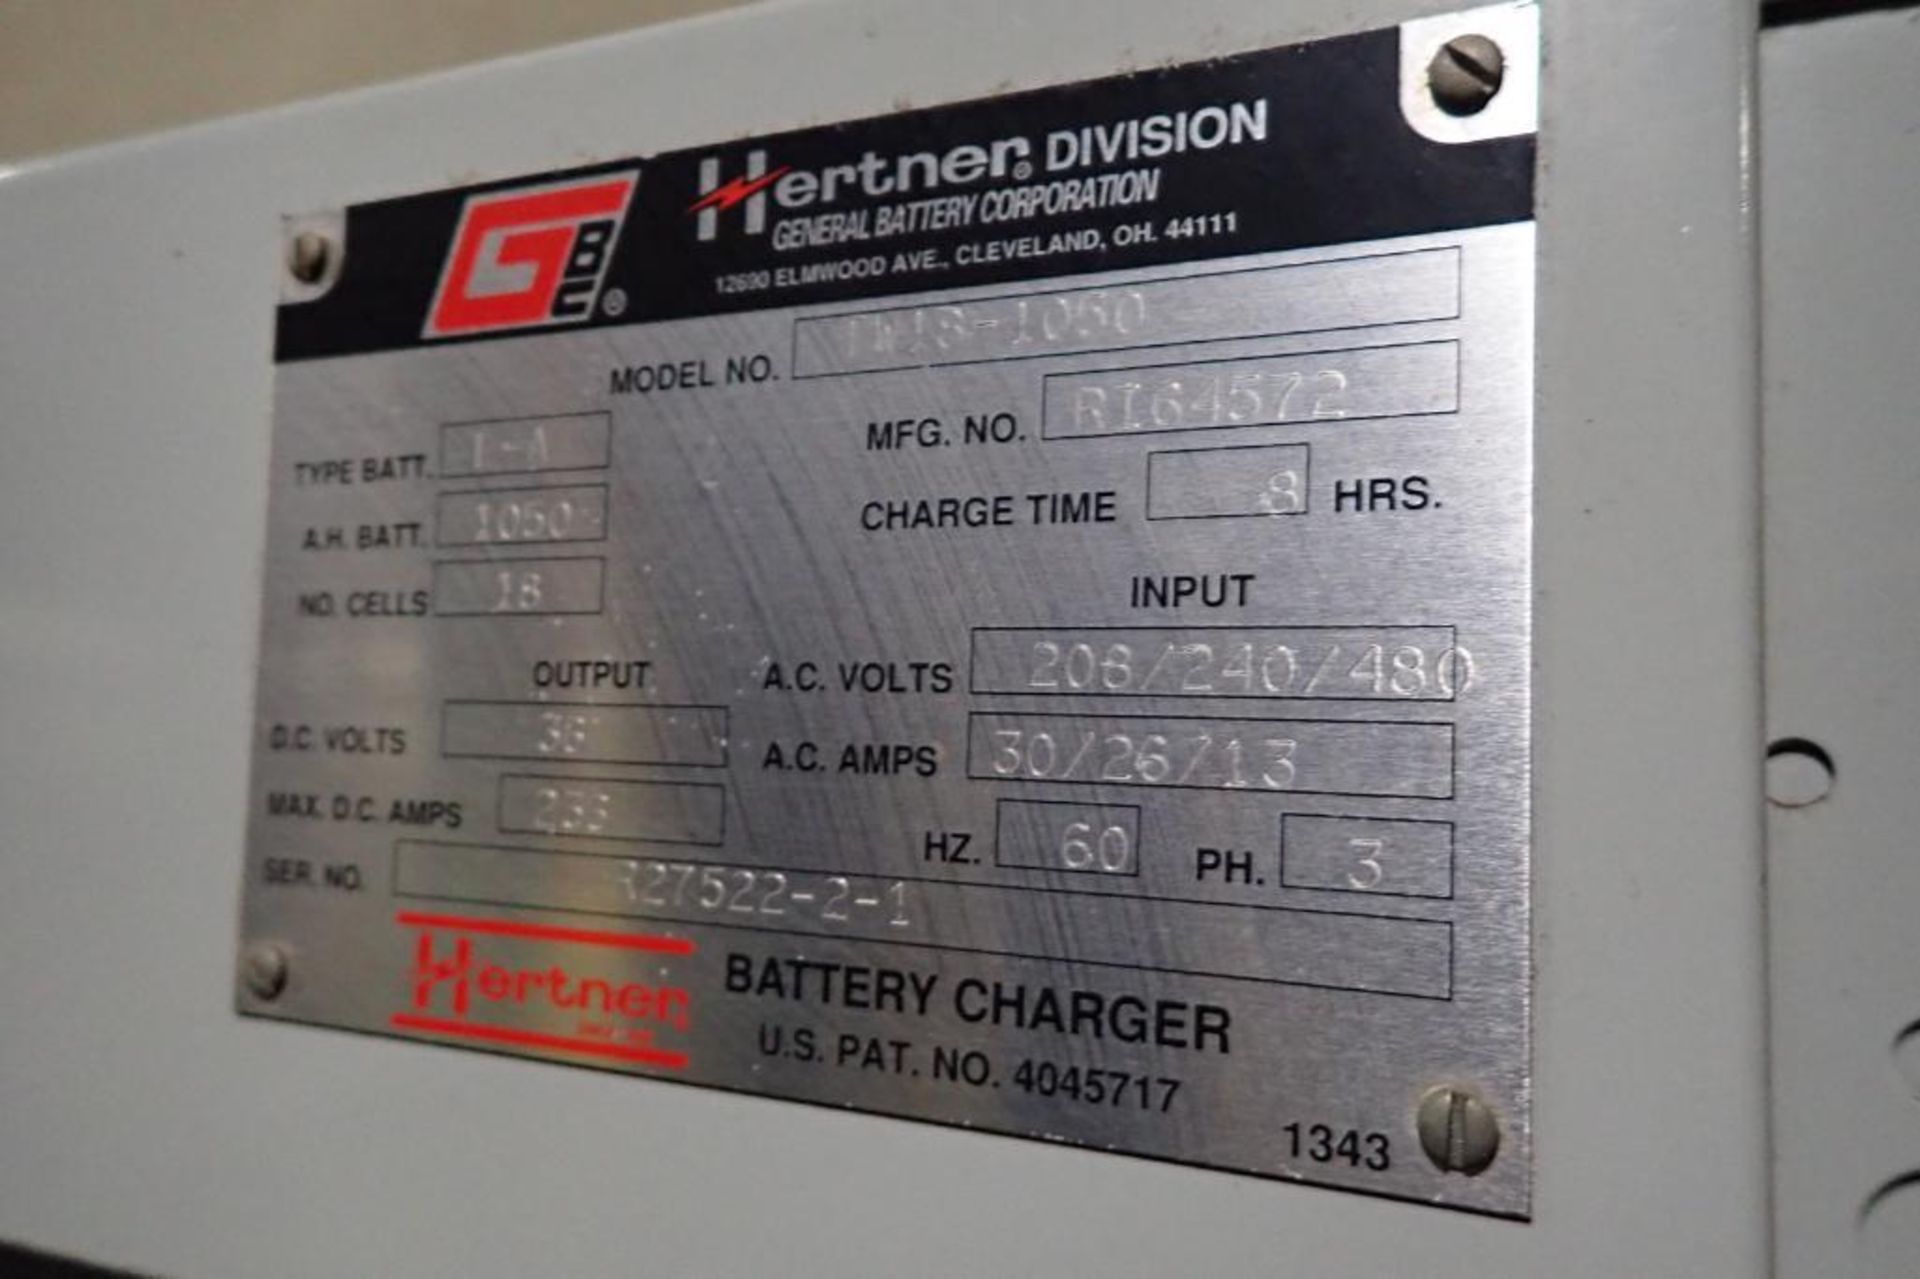 Hertner 36 volt battery charger, Model TW18-1050, SN R27522-2-1, 18 cells, 208/240/480V.. **Rigging - Image 5 of 5